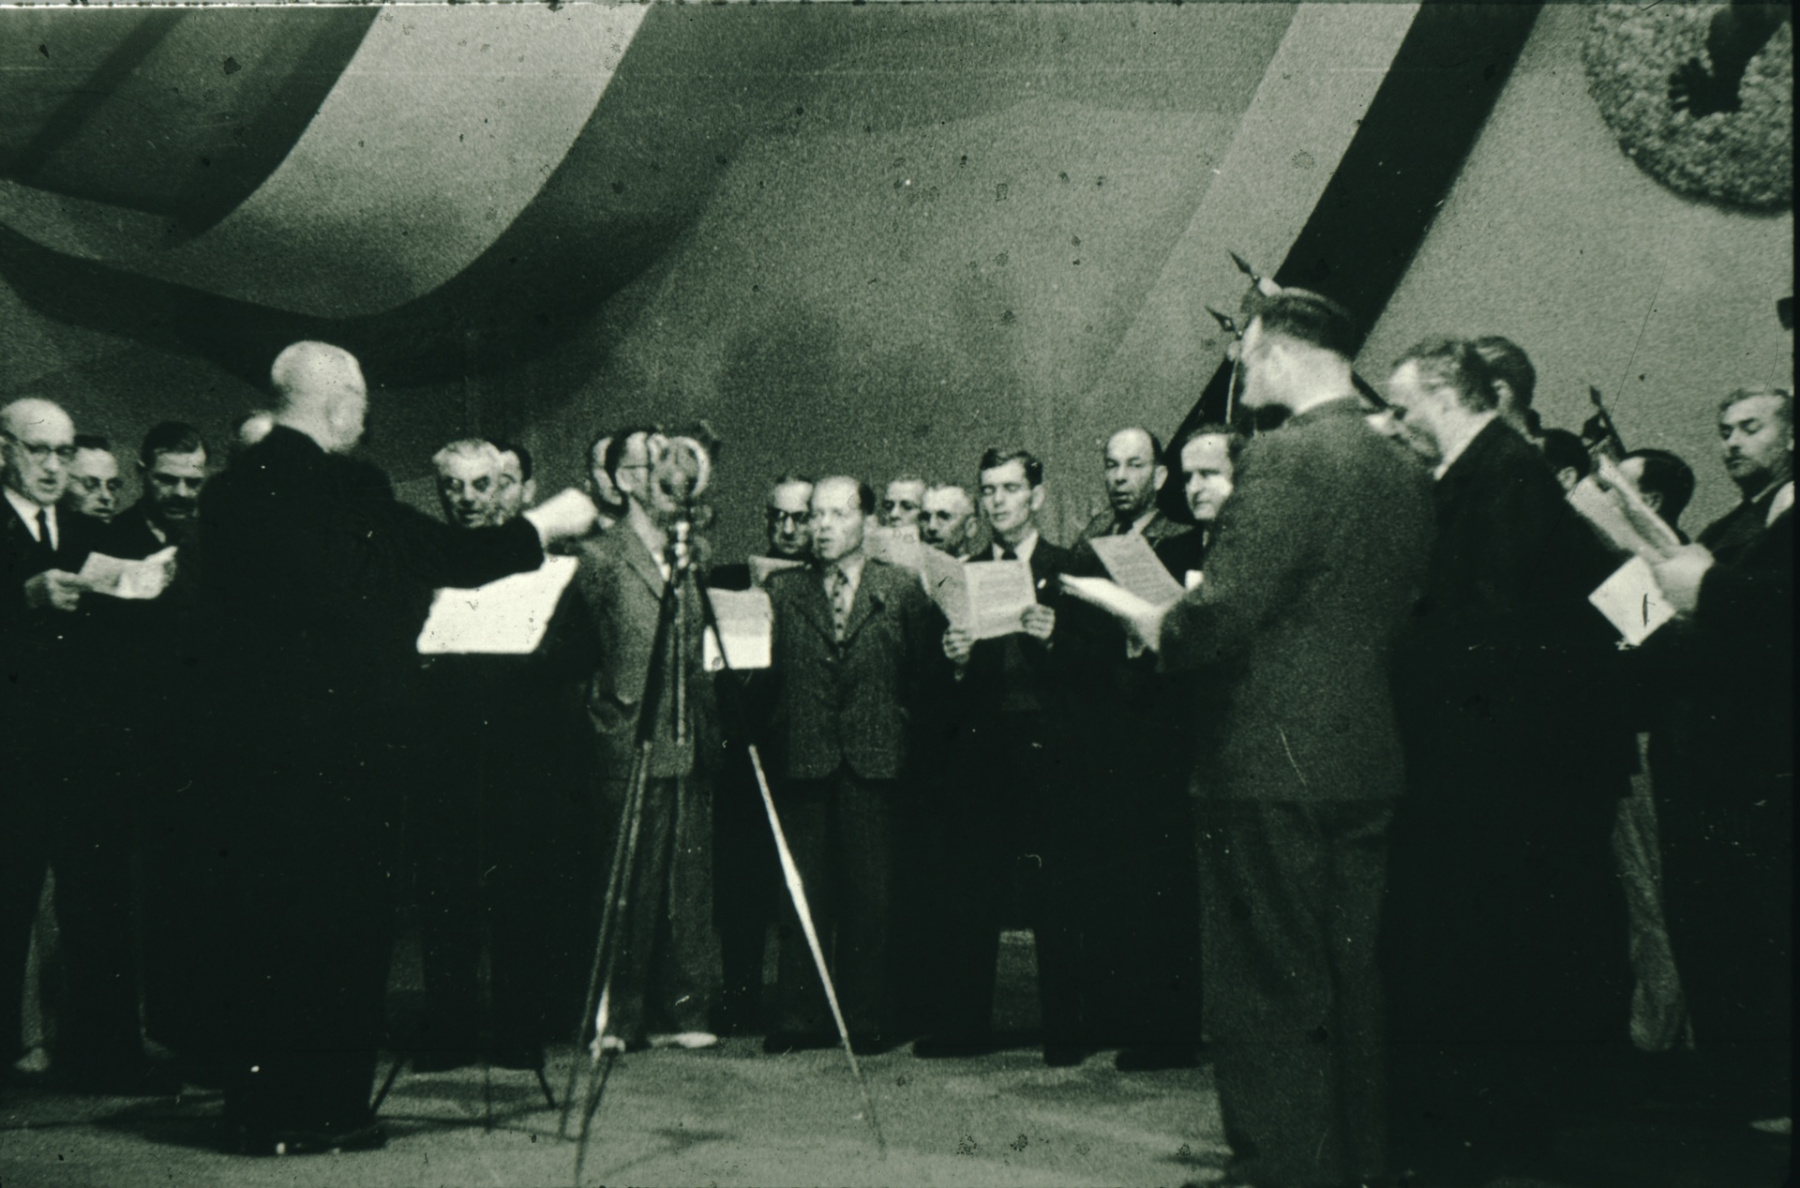 Bahneinweihung 1947, Abendprogramm Männerchor, Dirigent Otto Honegger (Lehrer)